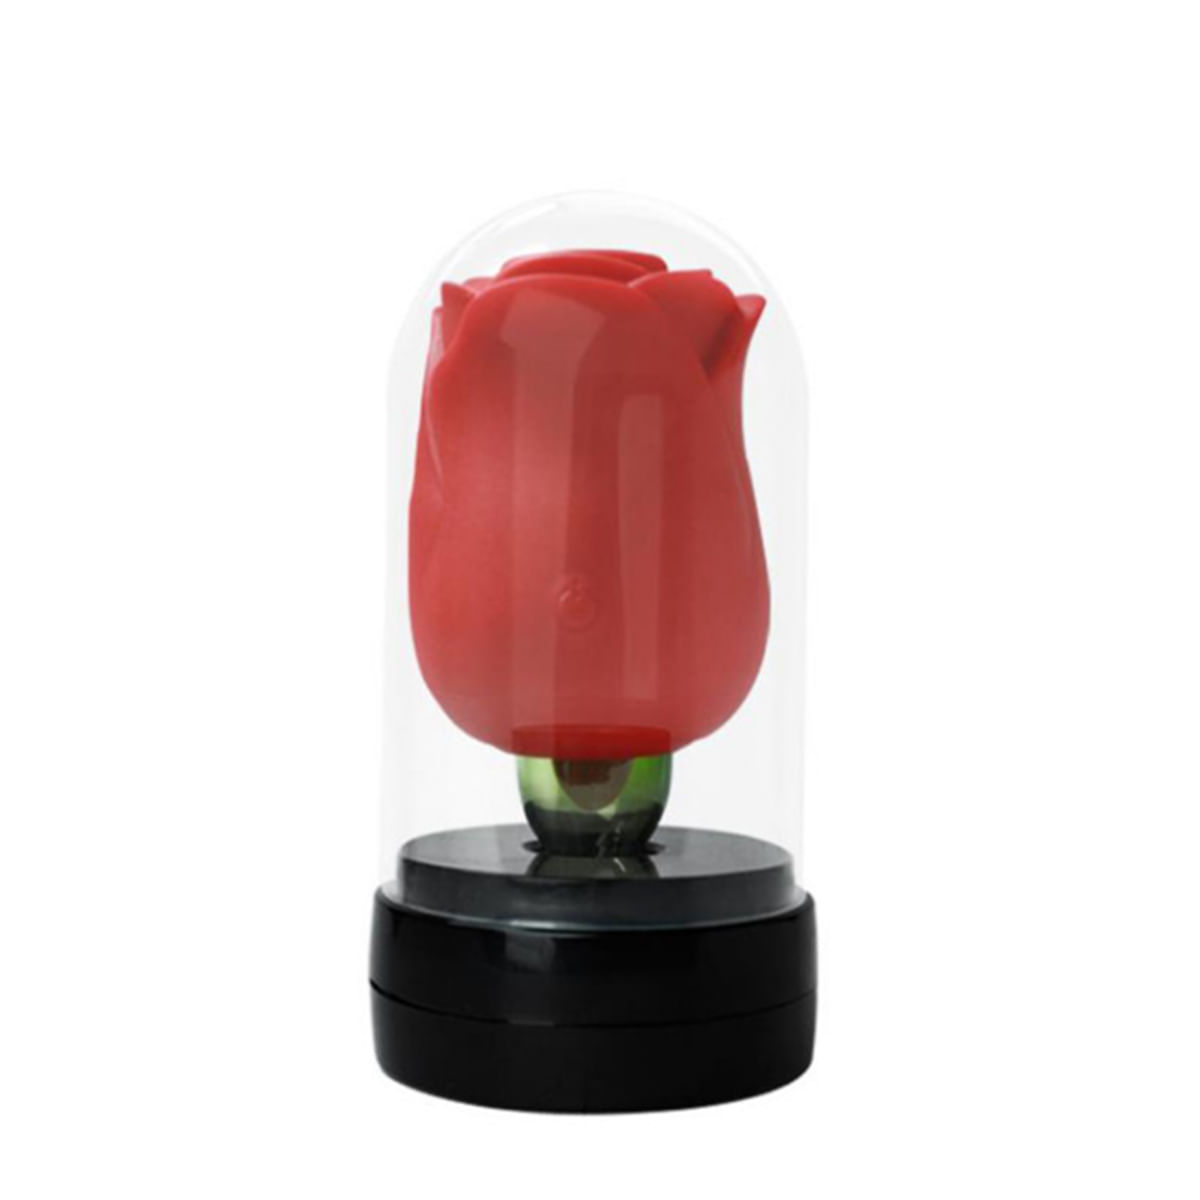 Estimulador Clitoriano Duplo Flower com 7 Frequências de Vibração Me Ame Sex Toys